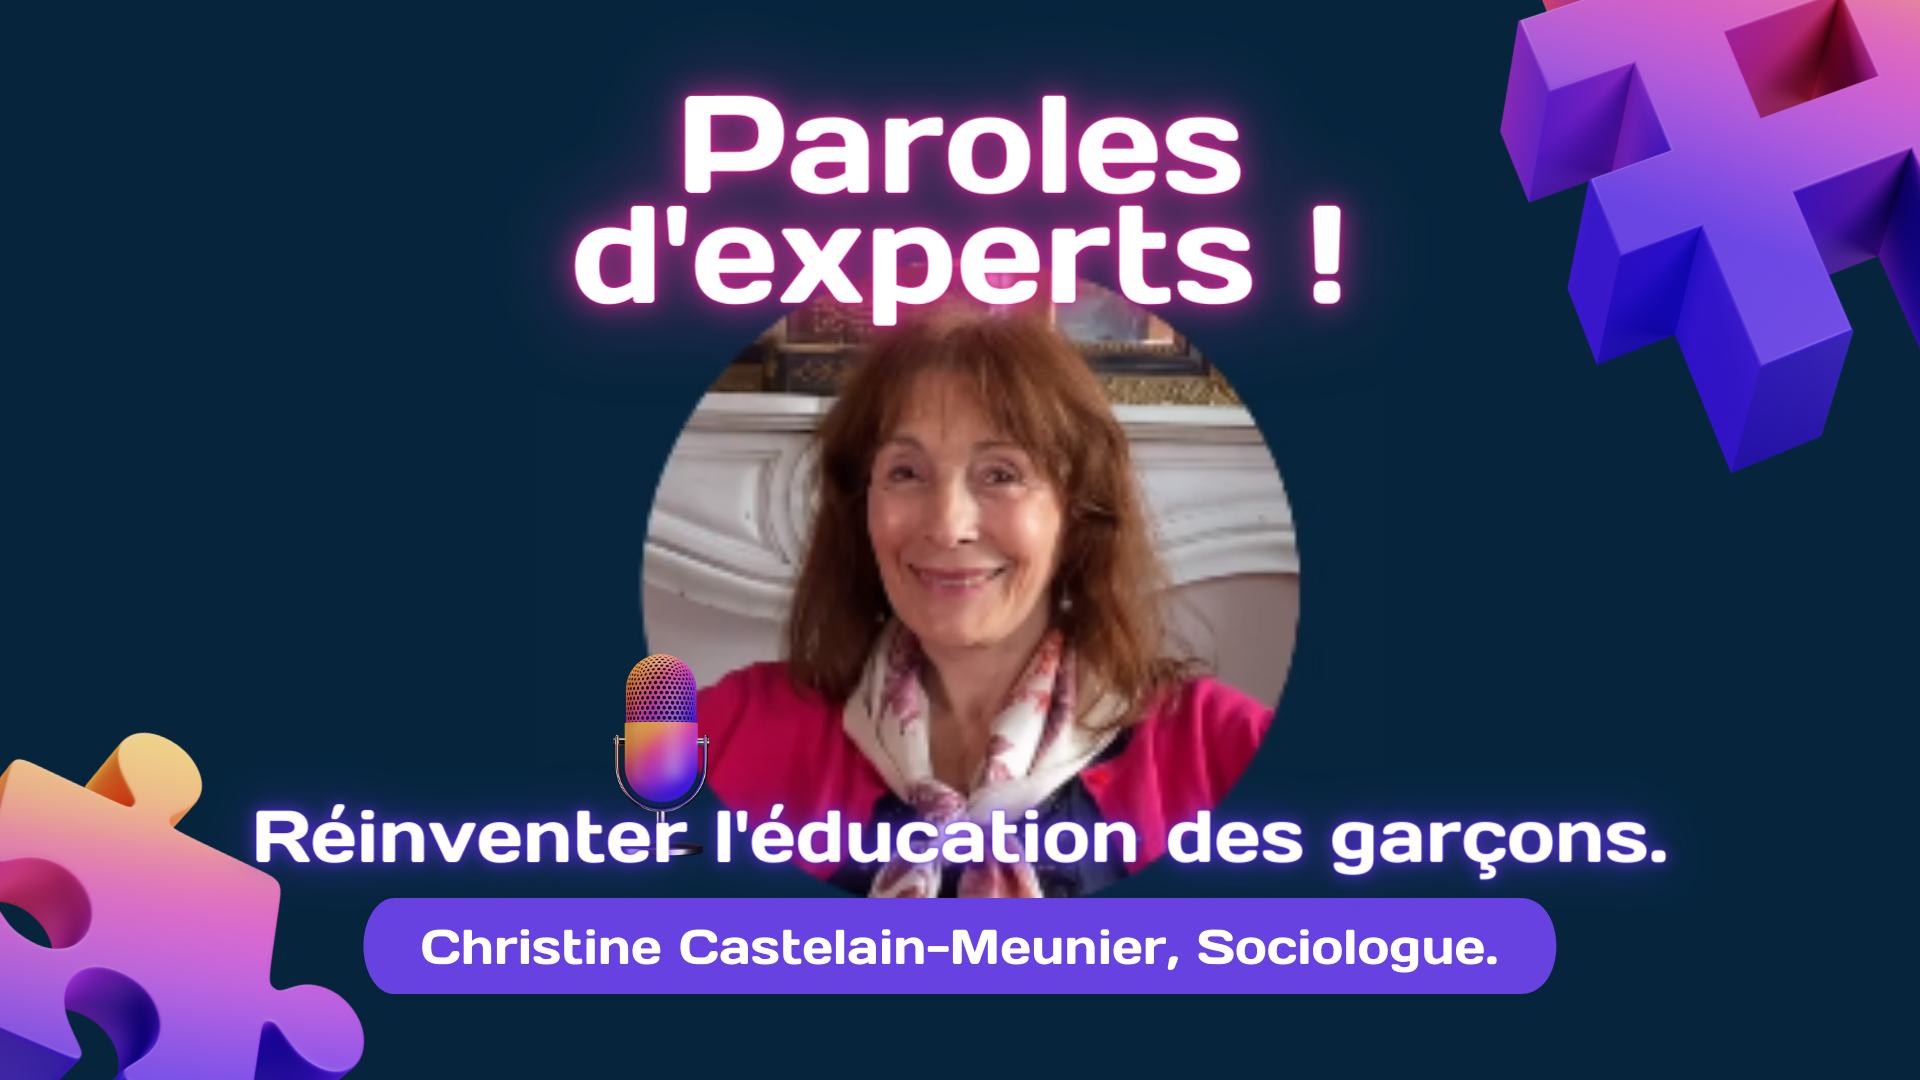 Christine Castelain-Meunier, sociologue au CNRS, donne 4 conseils pour réinventer l'éducation des garçons